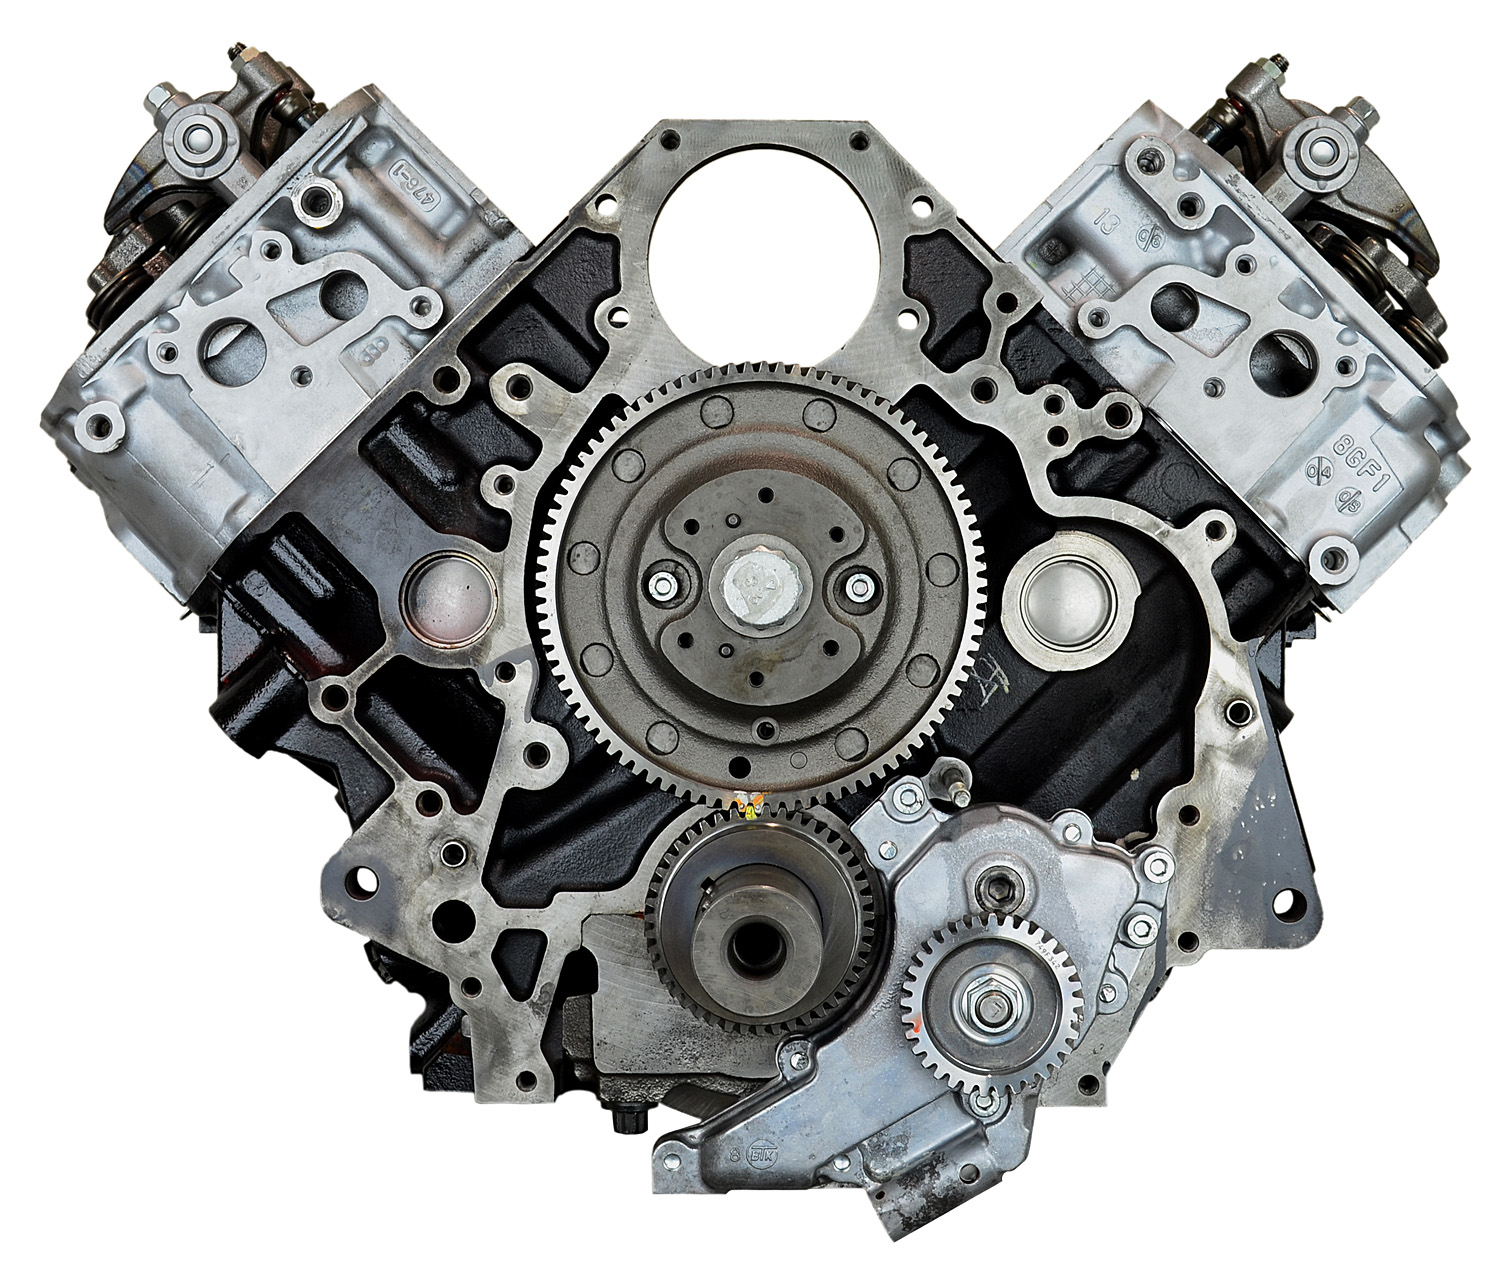 Chevy 6.6L Duramax V8 Remanufactured Engine - 2007-2010